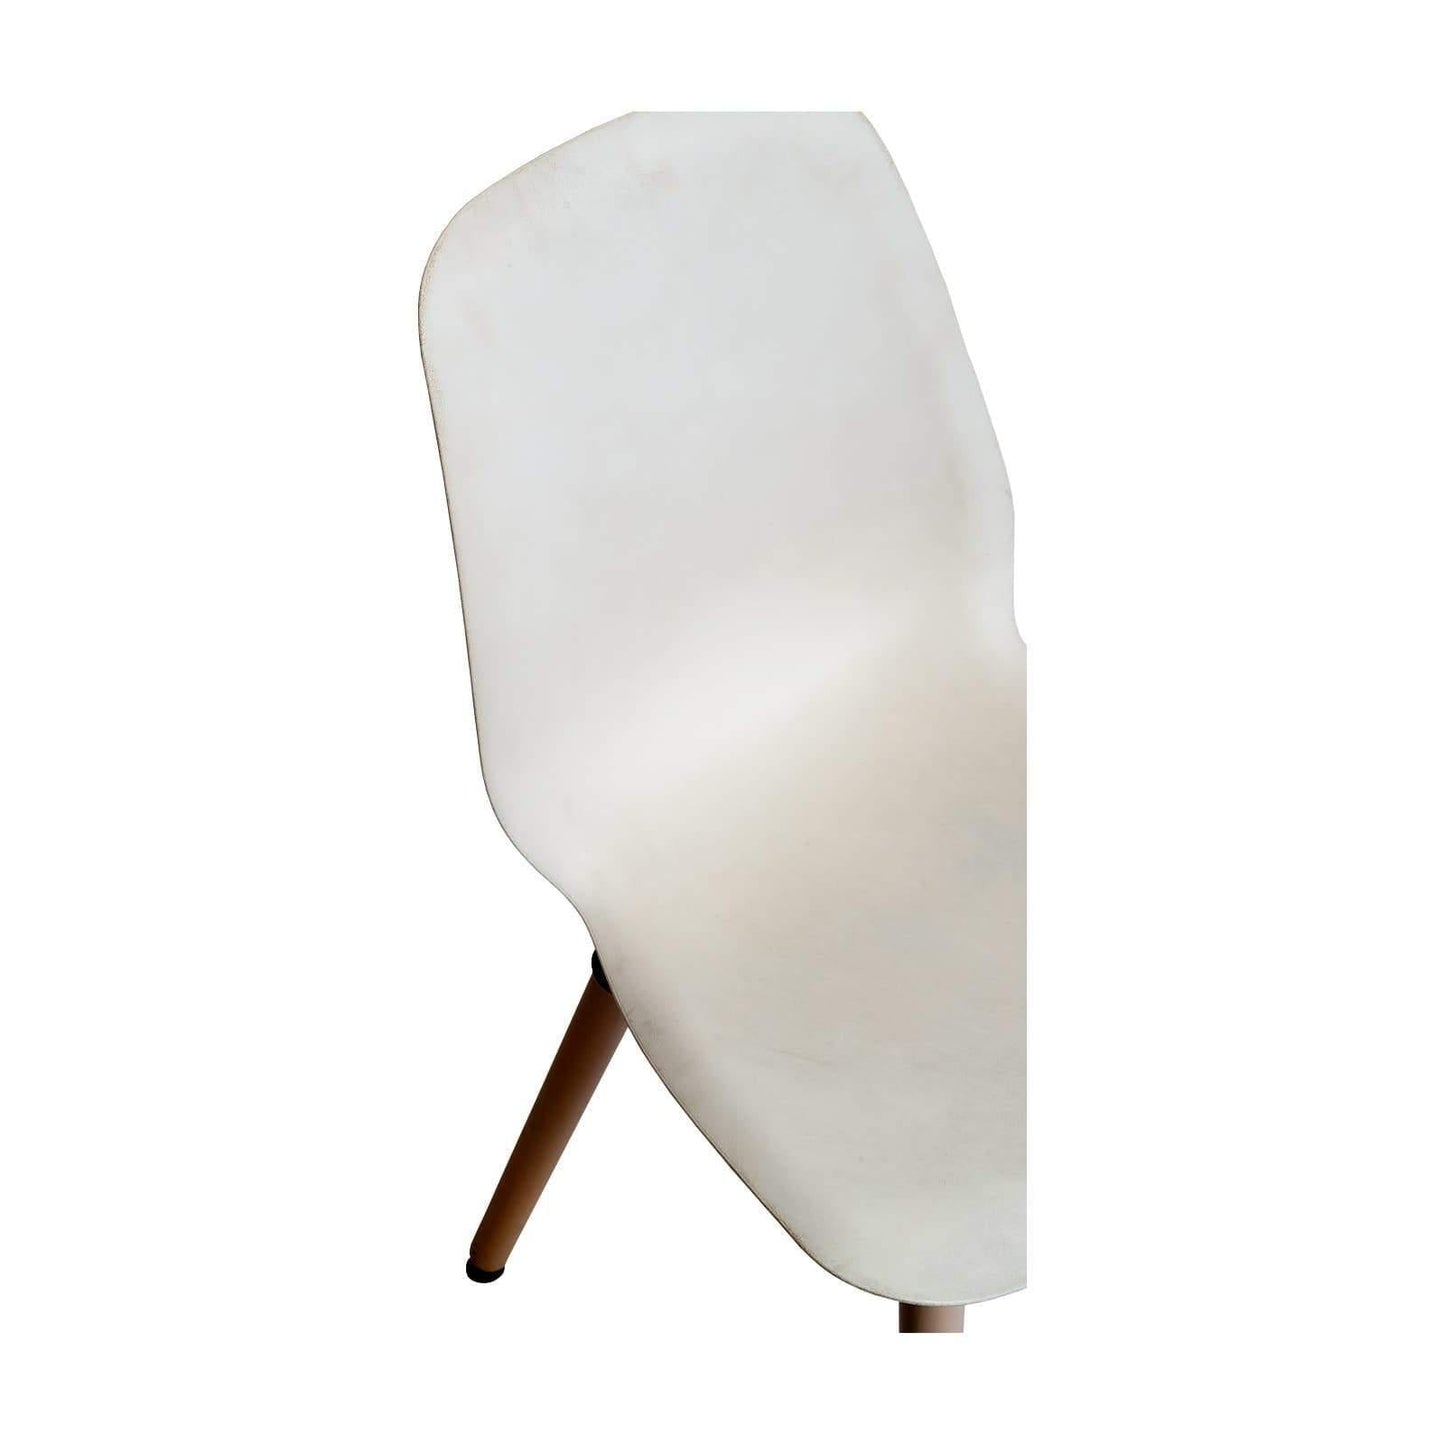 Chaise de réunion scandinave occasion - Blanc - 40 x 45 x 82 cm-Bluedigo